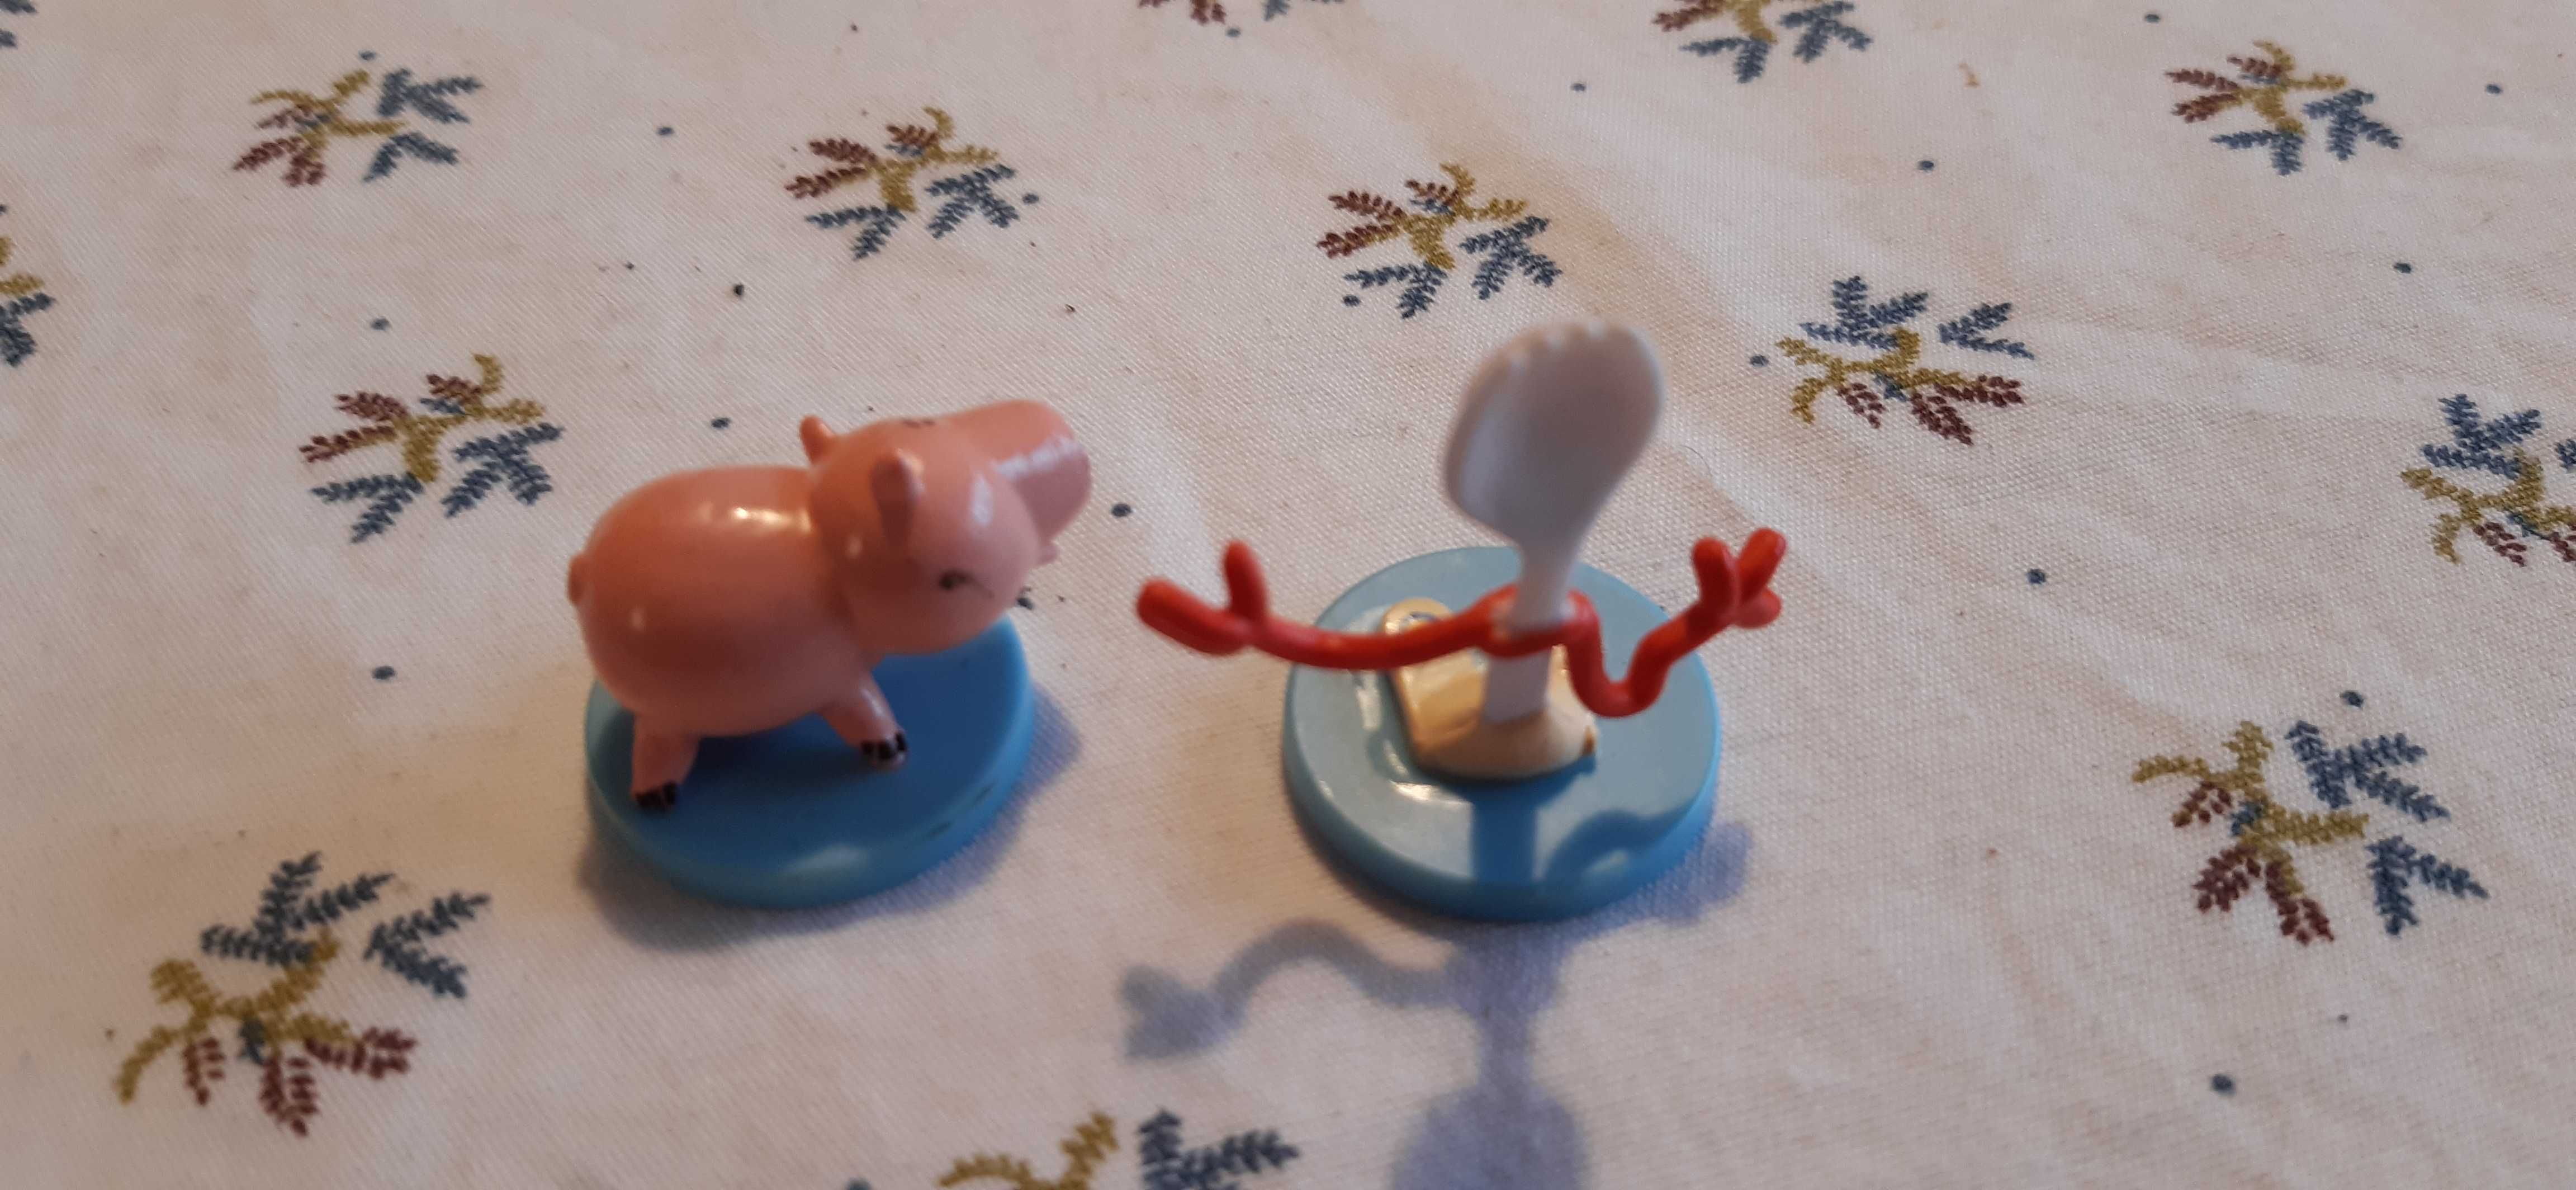 2 stare figurki z jajka niespodzianki seria toy story kolekcjonerskie